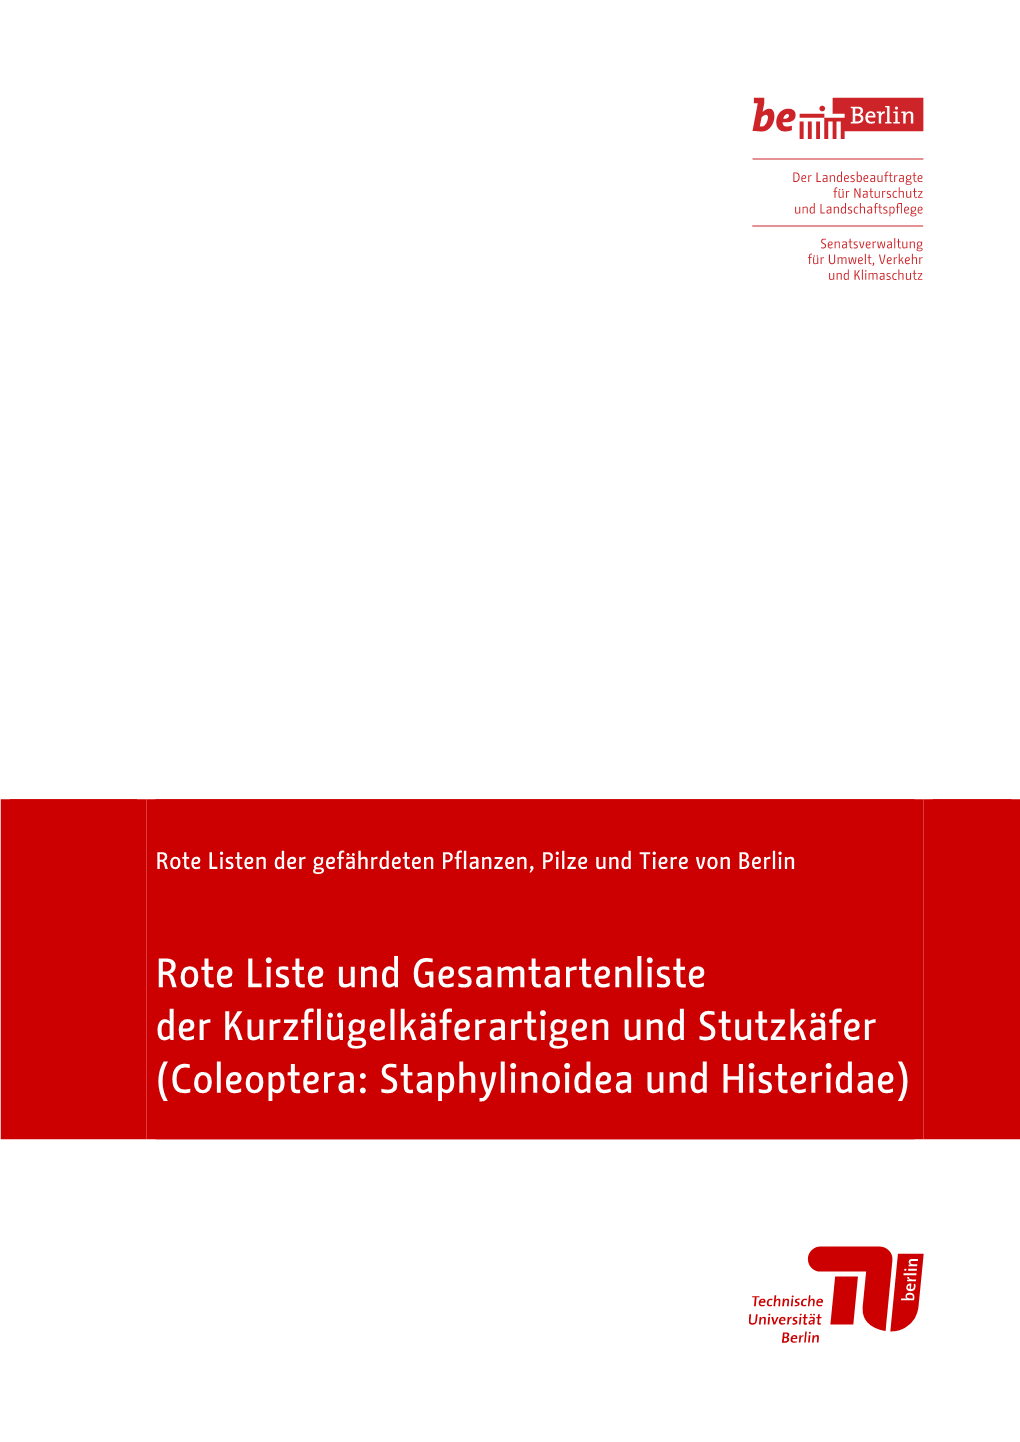 Rote Liste Und Gesamtartenliste Der Kurzflügelkäferartigen Und Stutzkäfer (Coleoptera: Staphylinoidea Und Histeridae)